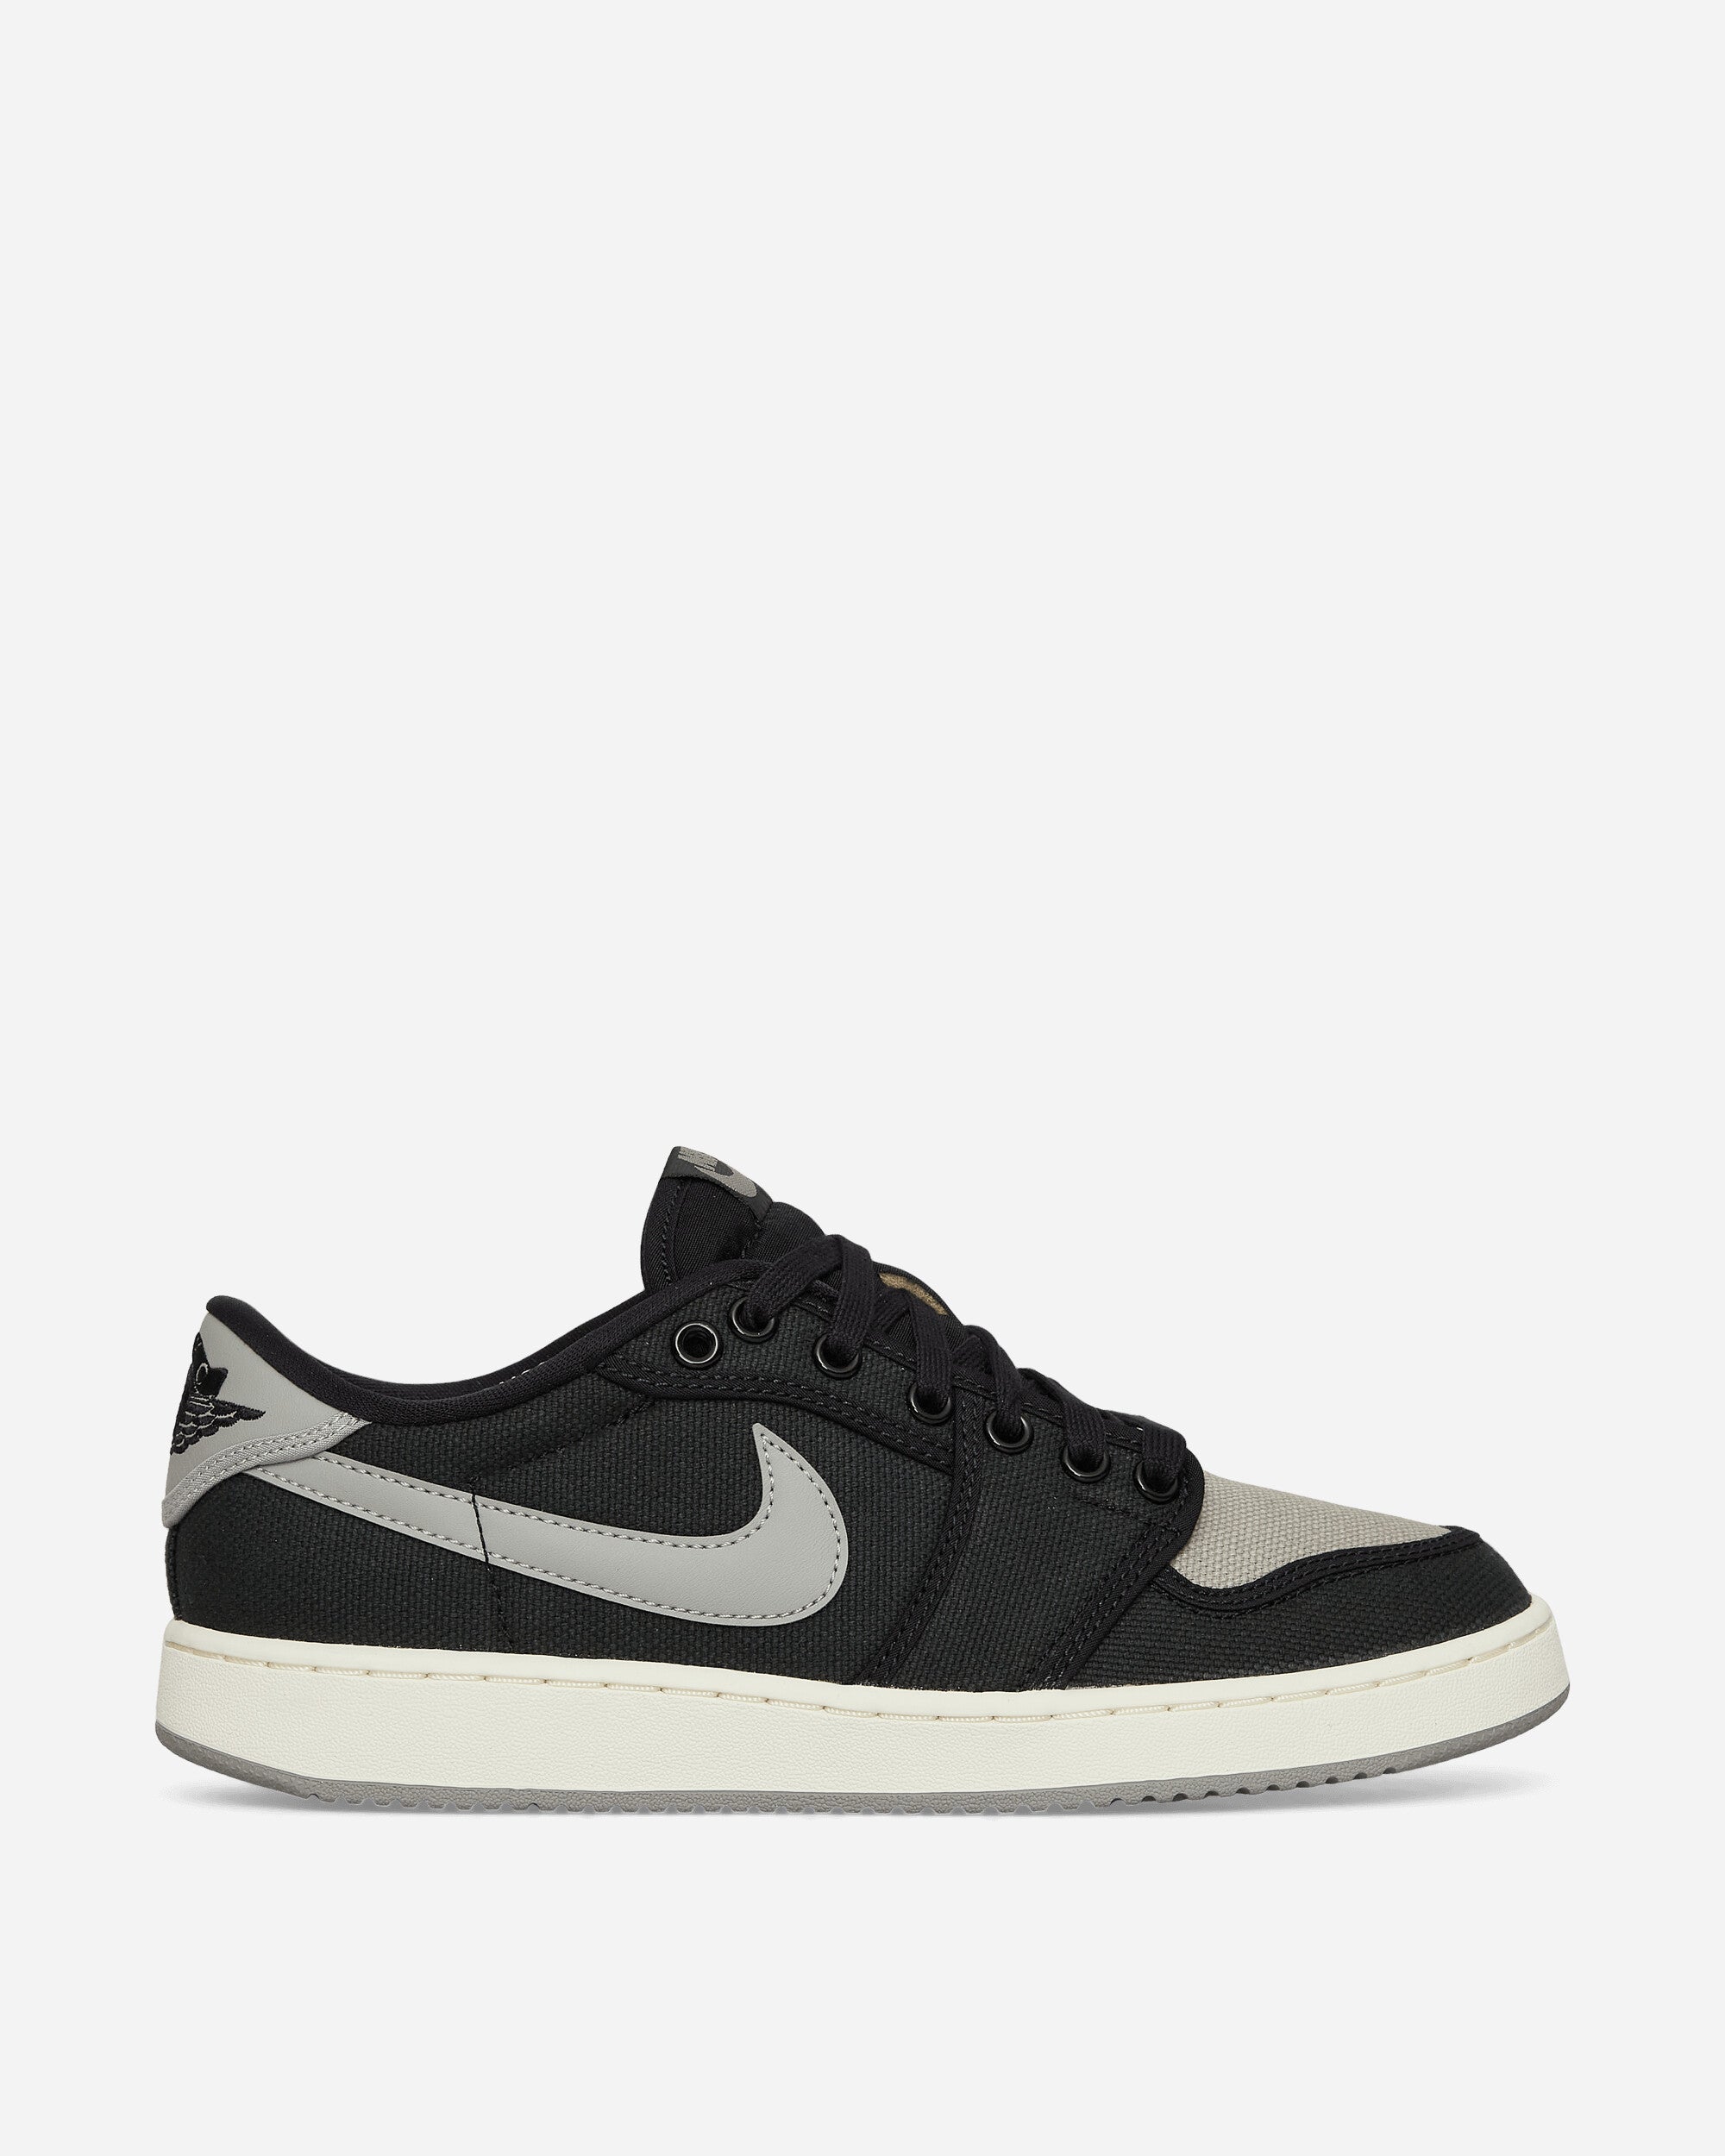 AJKO 1 Low Sneakers Black / Medium Grey